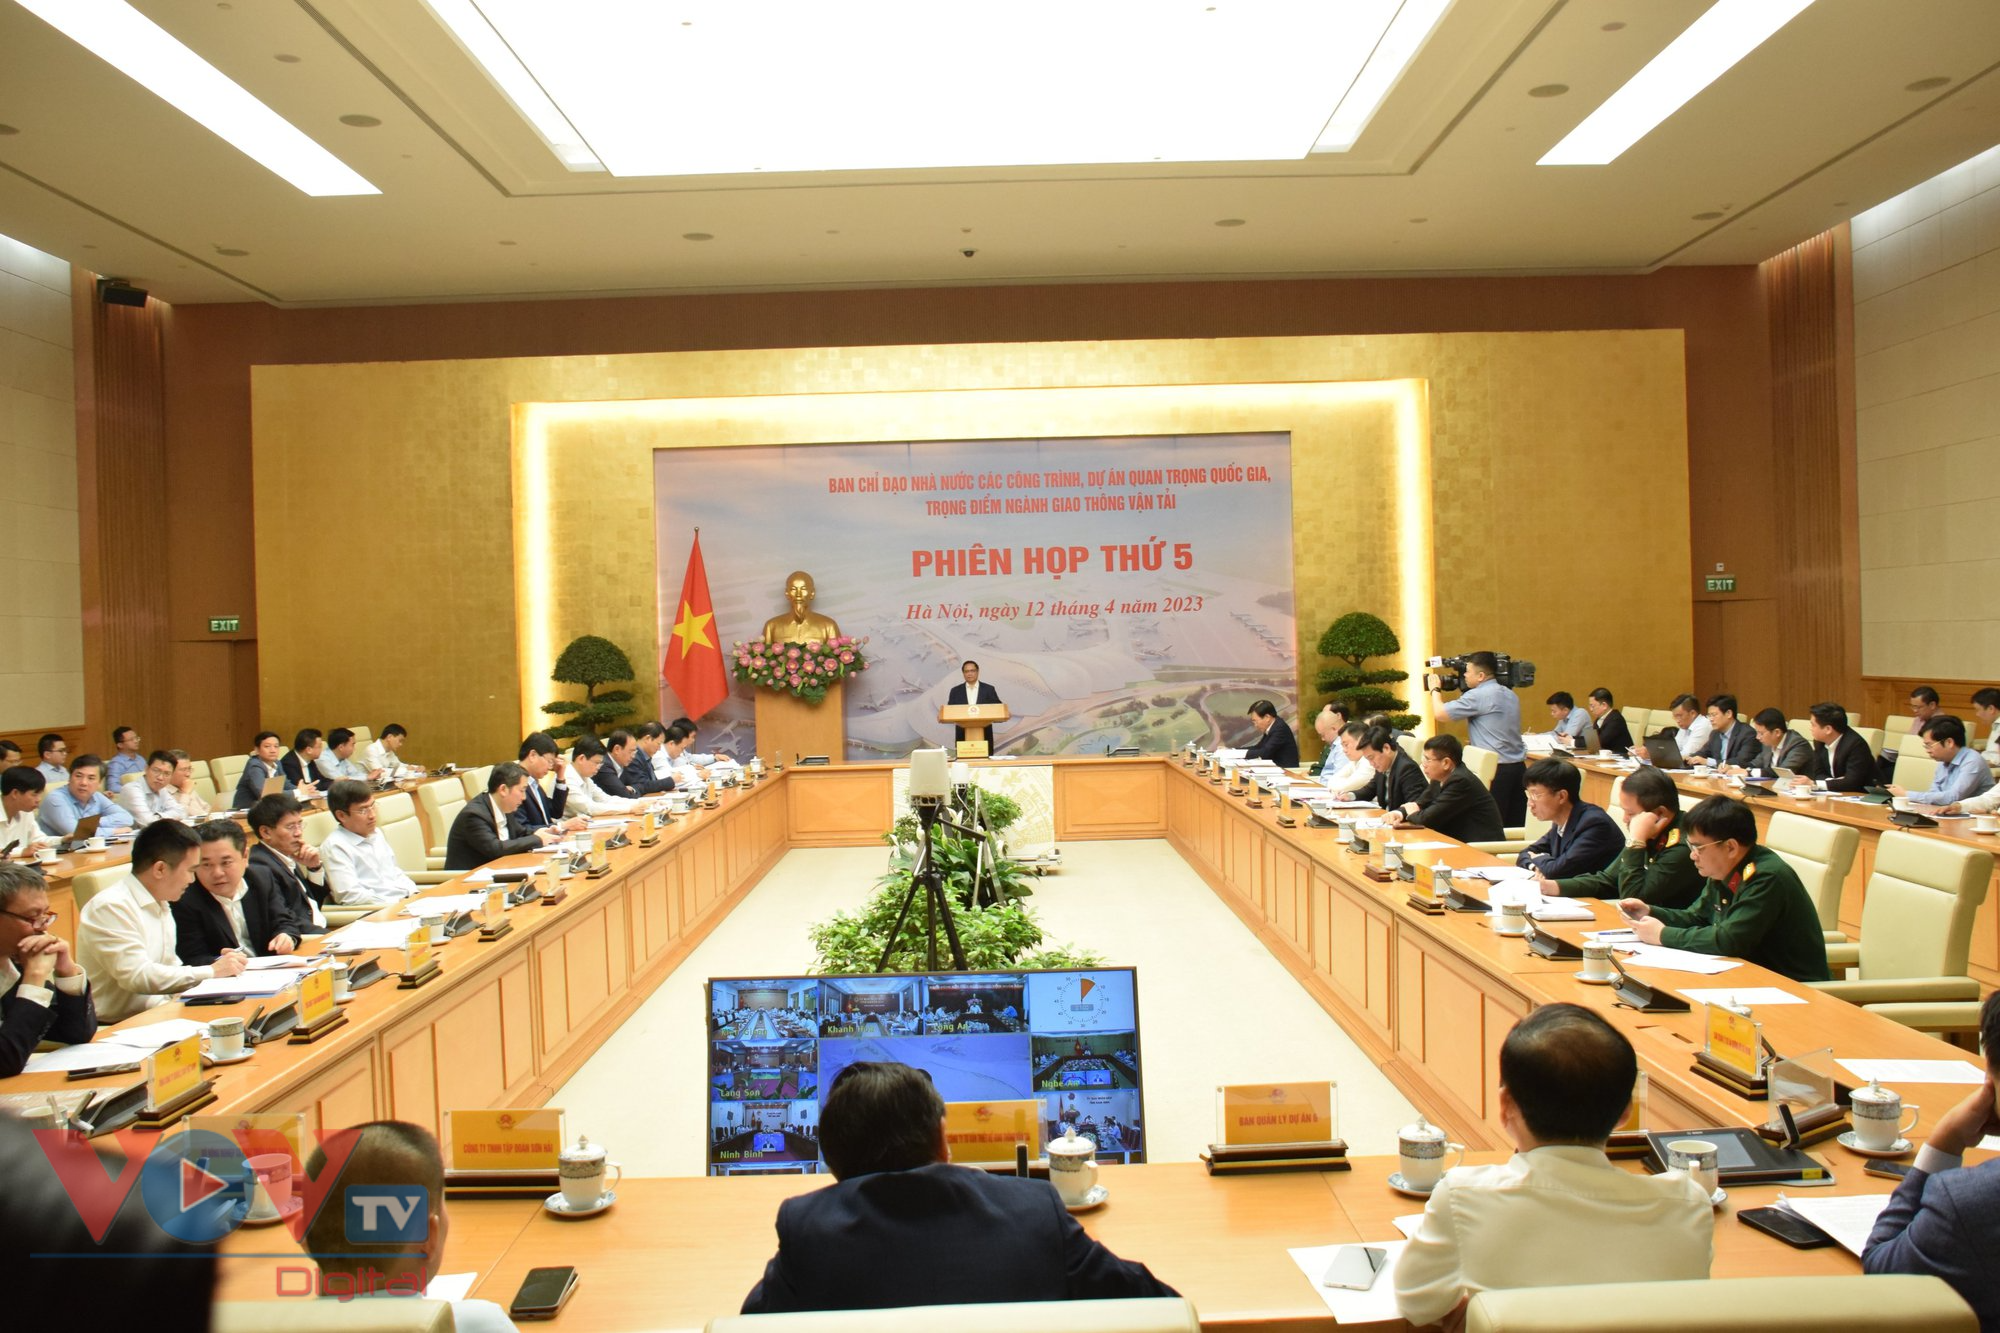 Thủ tướng Phạm Minh Chính chủ trì phiên họp thứ 5 về các dự án quan trọng quốc gia, trọng điểm ngành Giao thông vận tải - Ảnh 1.